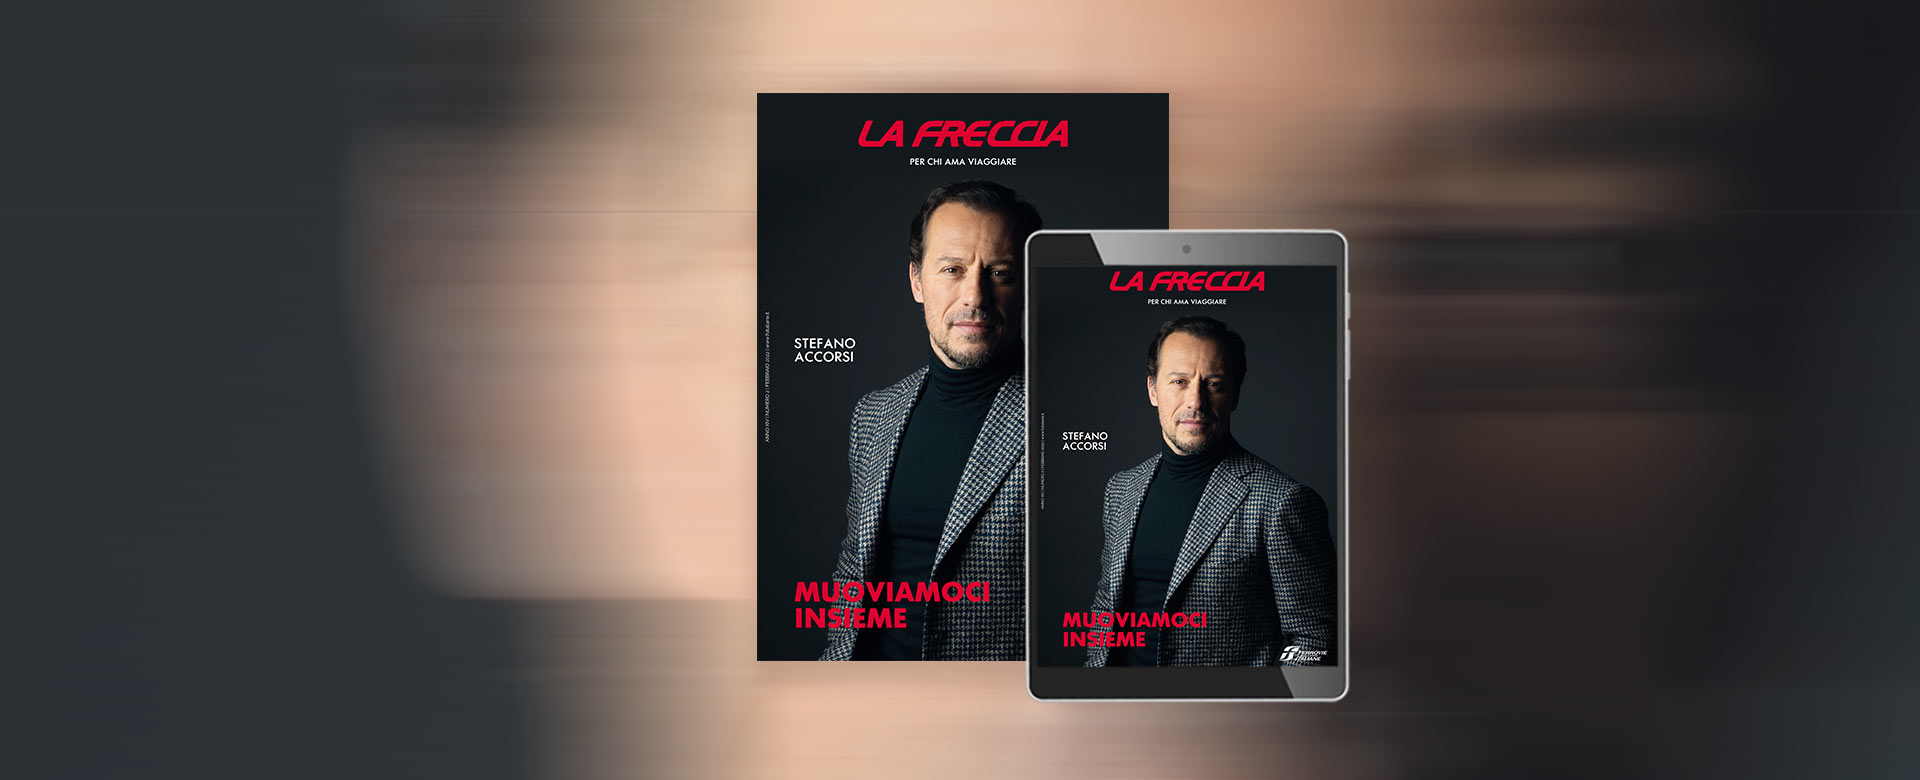 Cover de La Freccia di febbraio con Stefano Accorsi